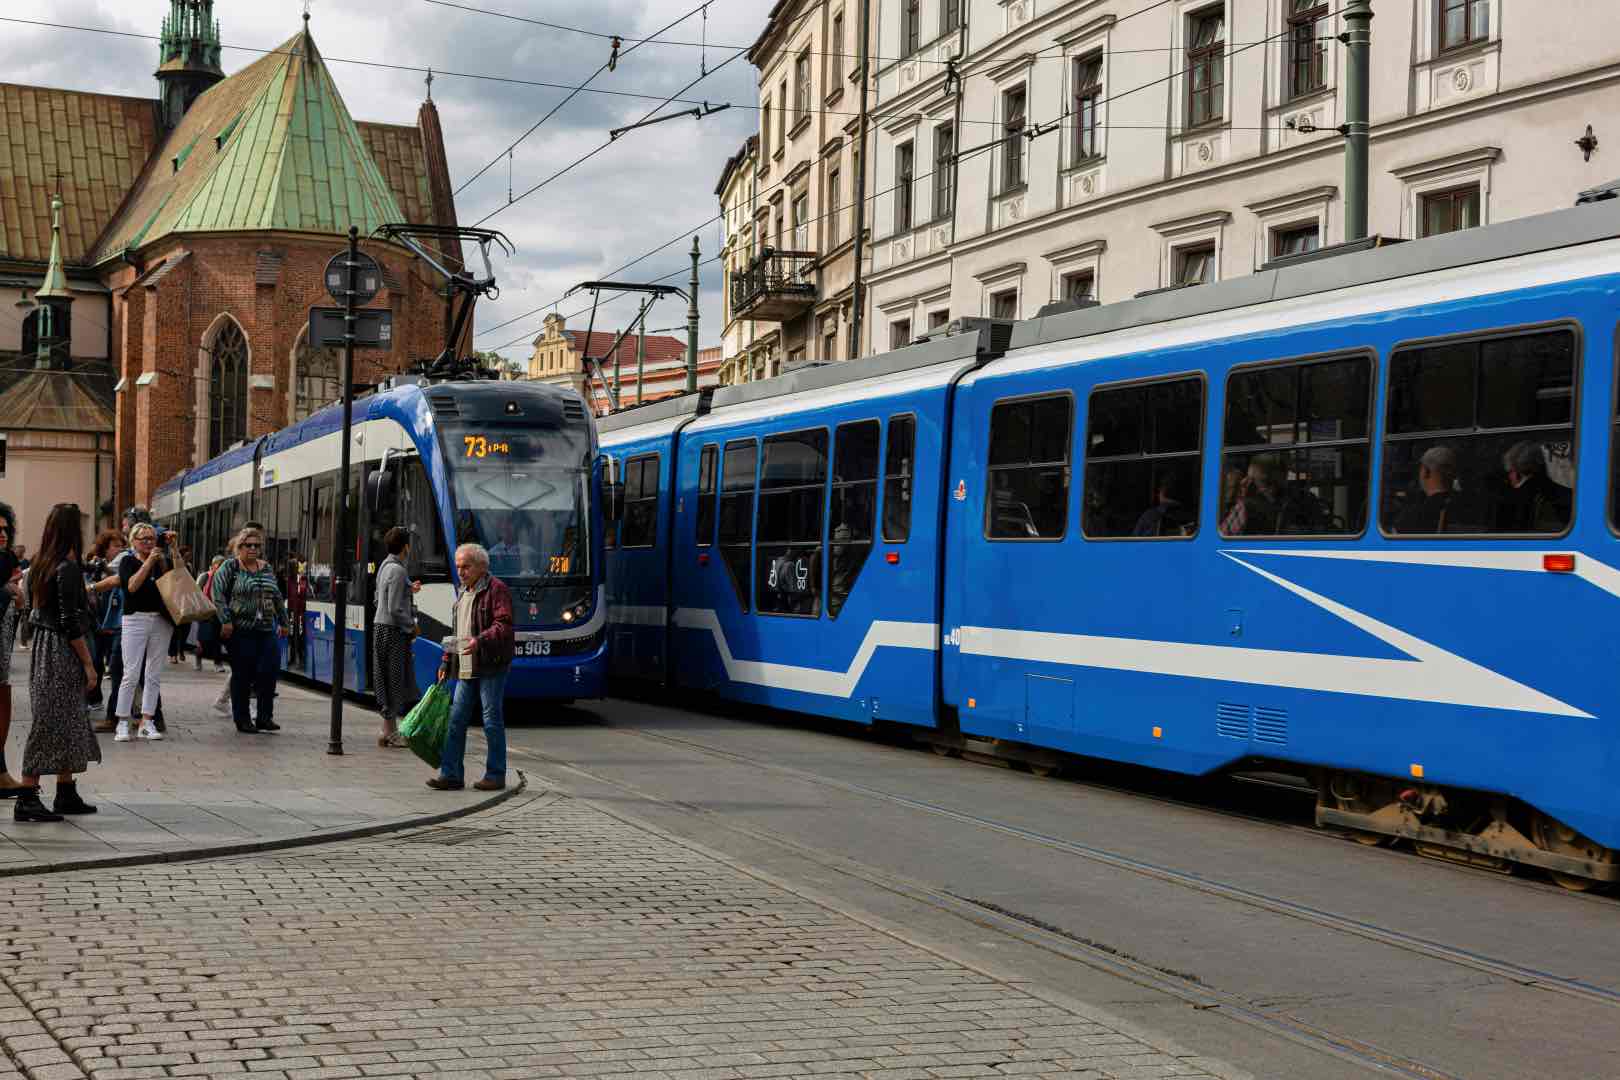 Krakow tram system